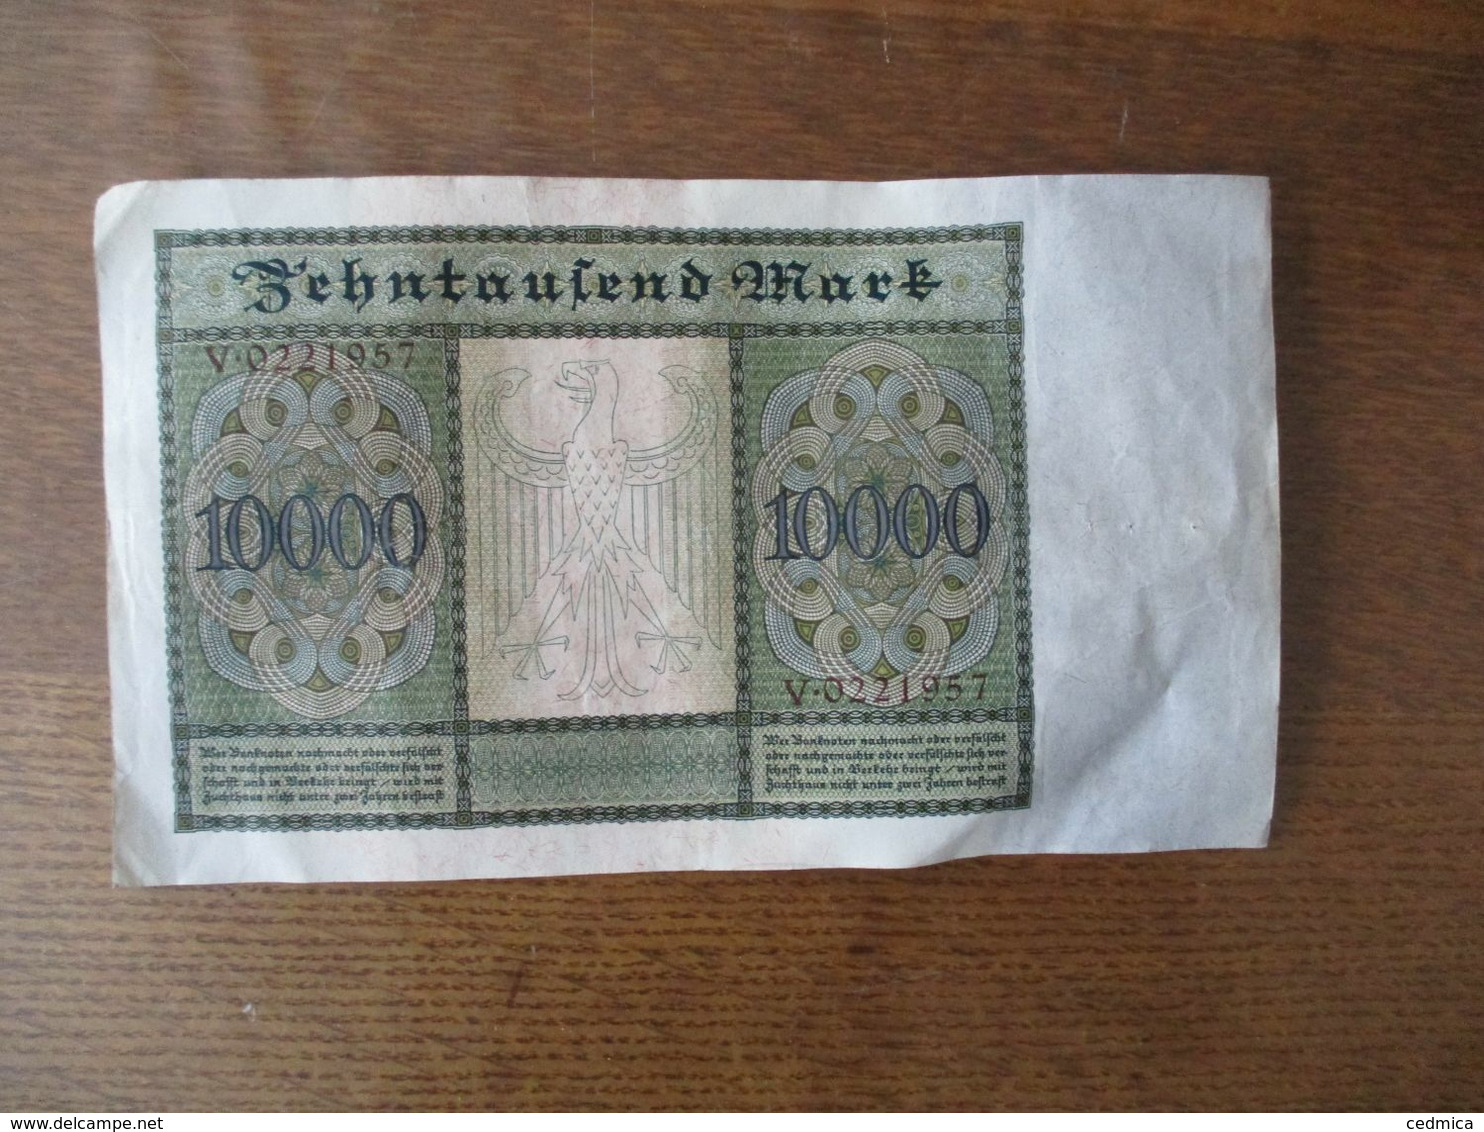 ZEHNTAUSEND MARK BERLIN DEN 19. JANUAR 1922 V. 0221957 TRES BON ETAT - 10000 Mark